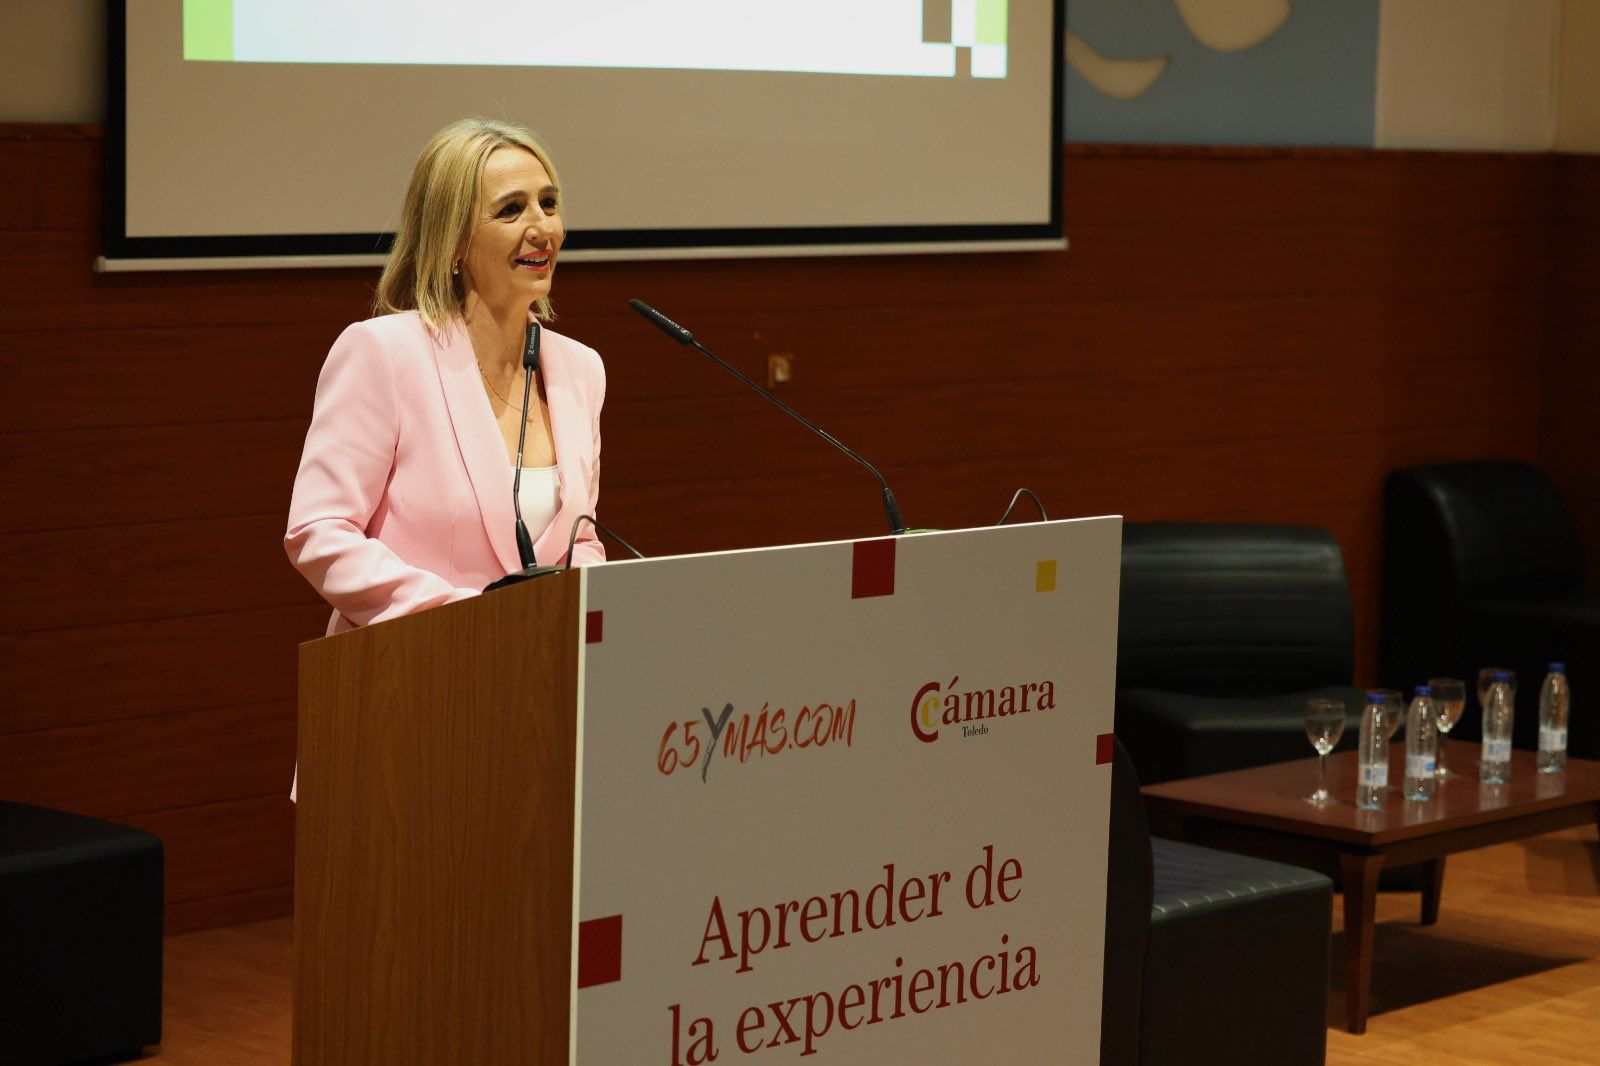 Inés Cañizares: "El talento, la experiencia, el esfuerzo y el conocimiento son fuentes de riqueza"